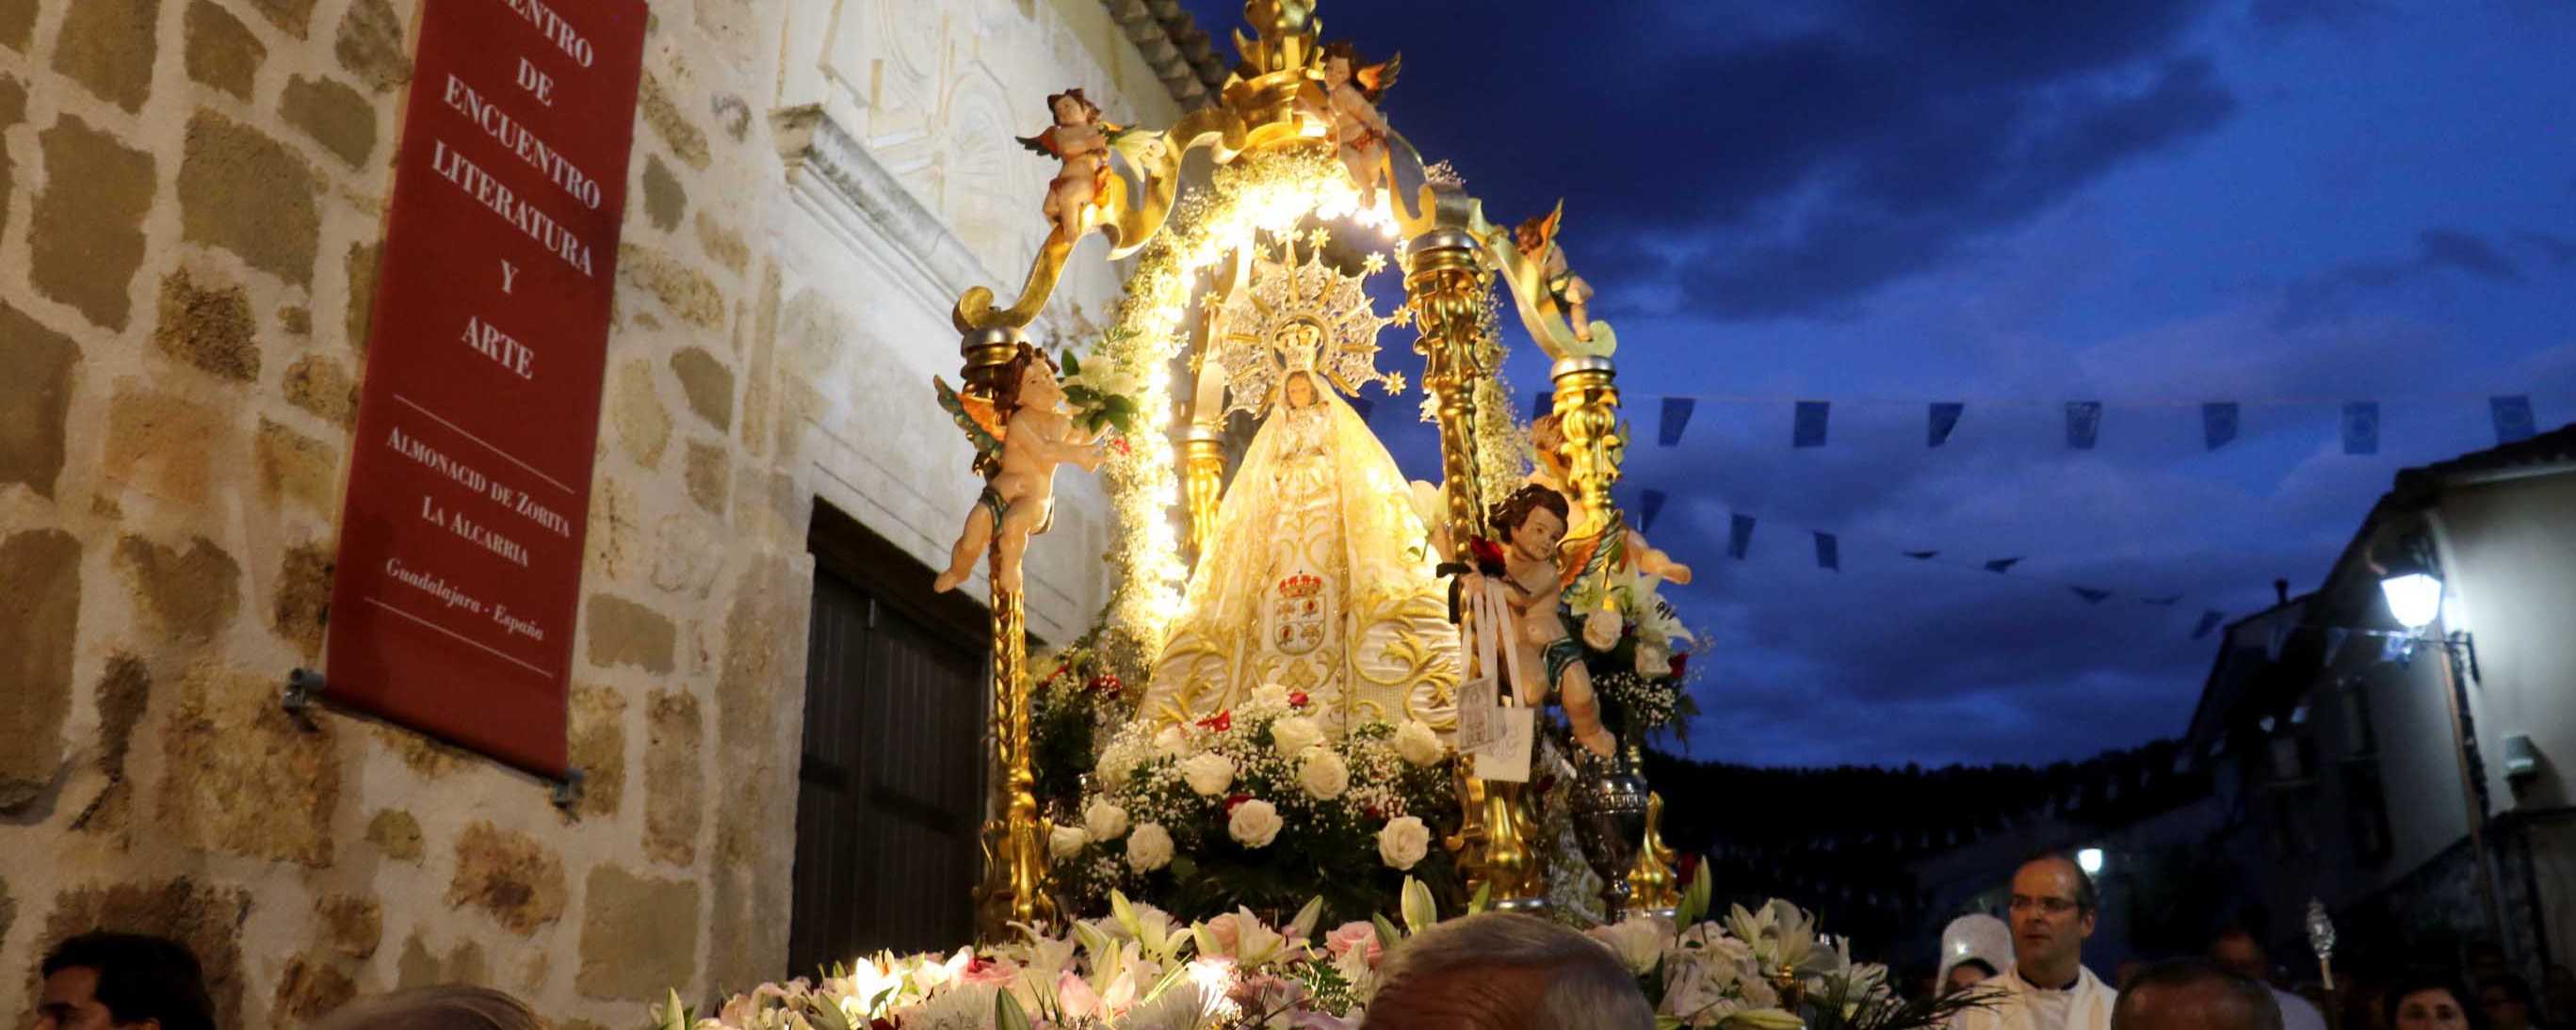 Almonacid vive intensamente sus fiestas patronales en honor a la Virgen de la Luz 